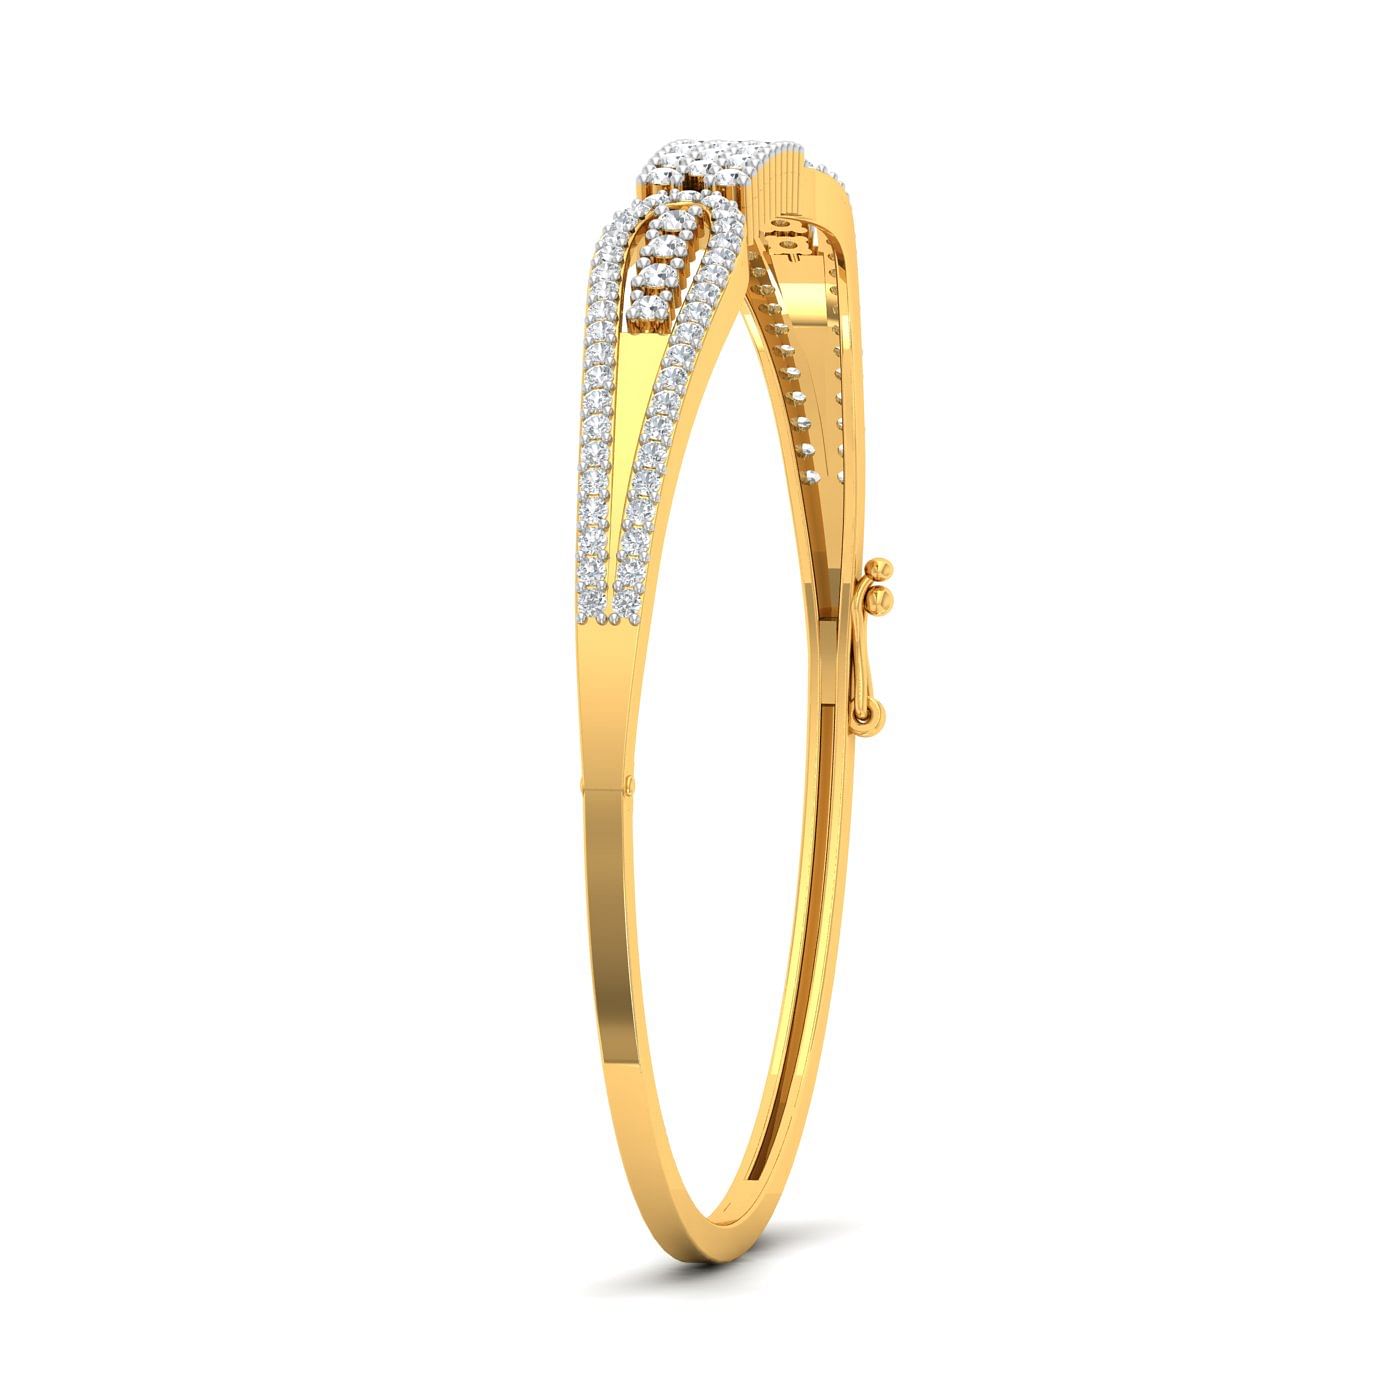 Yellow gold Poppy Flew Diamond Bracelet for wedding